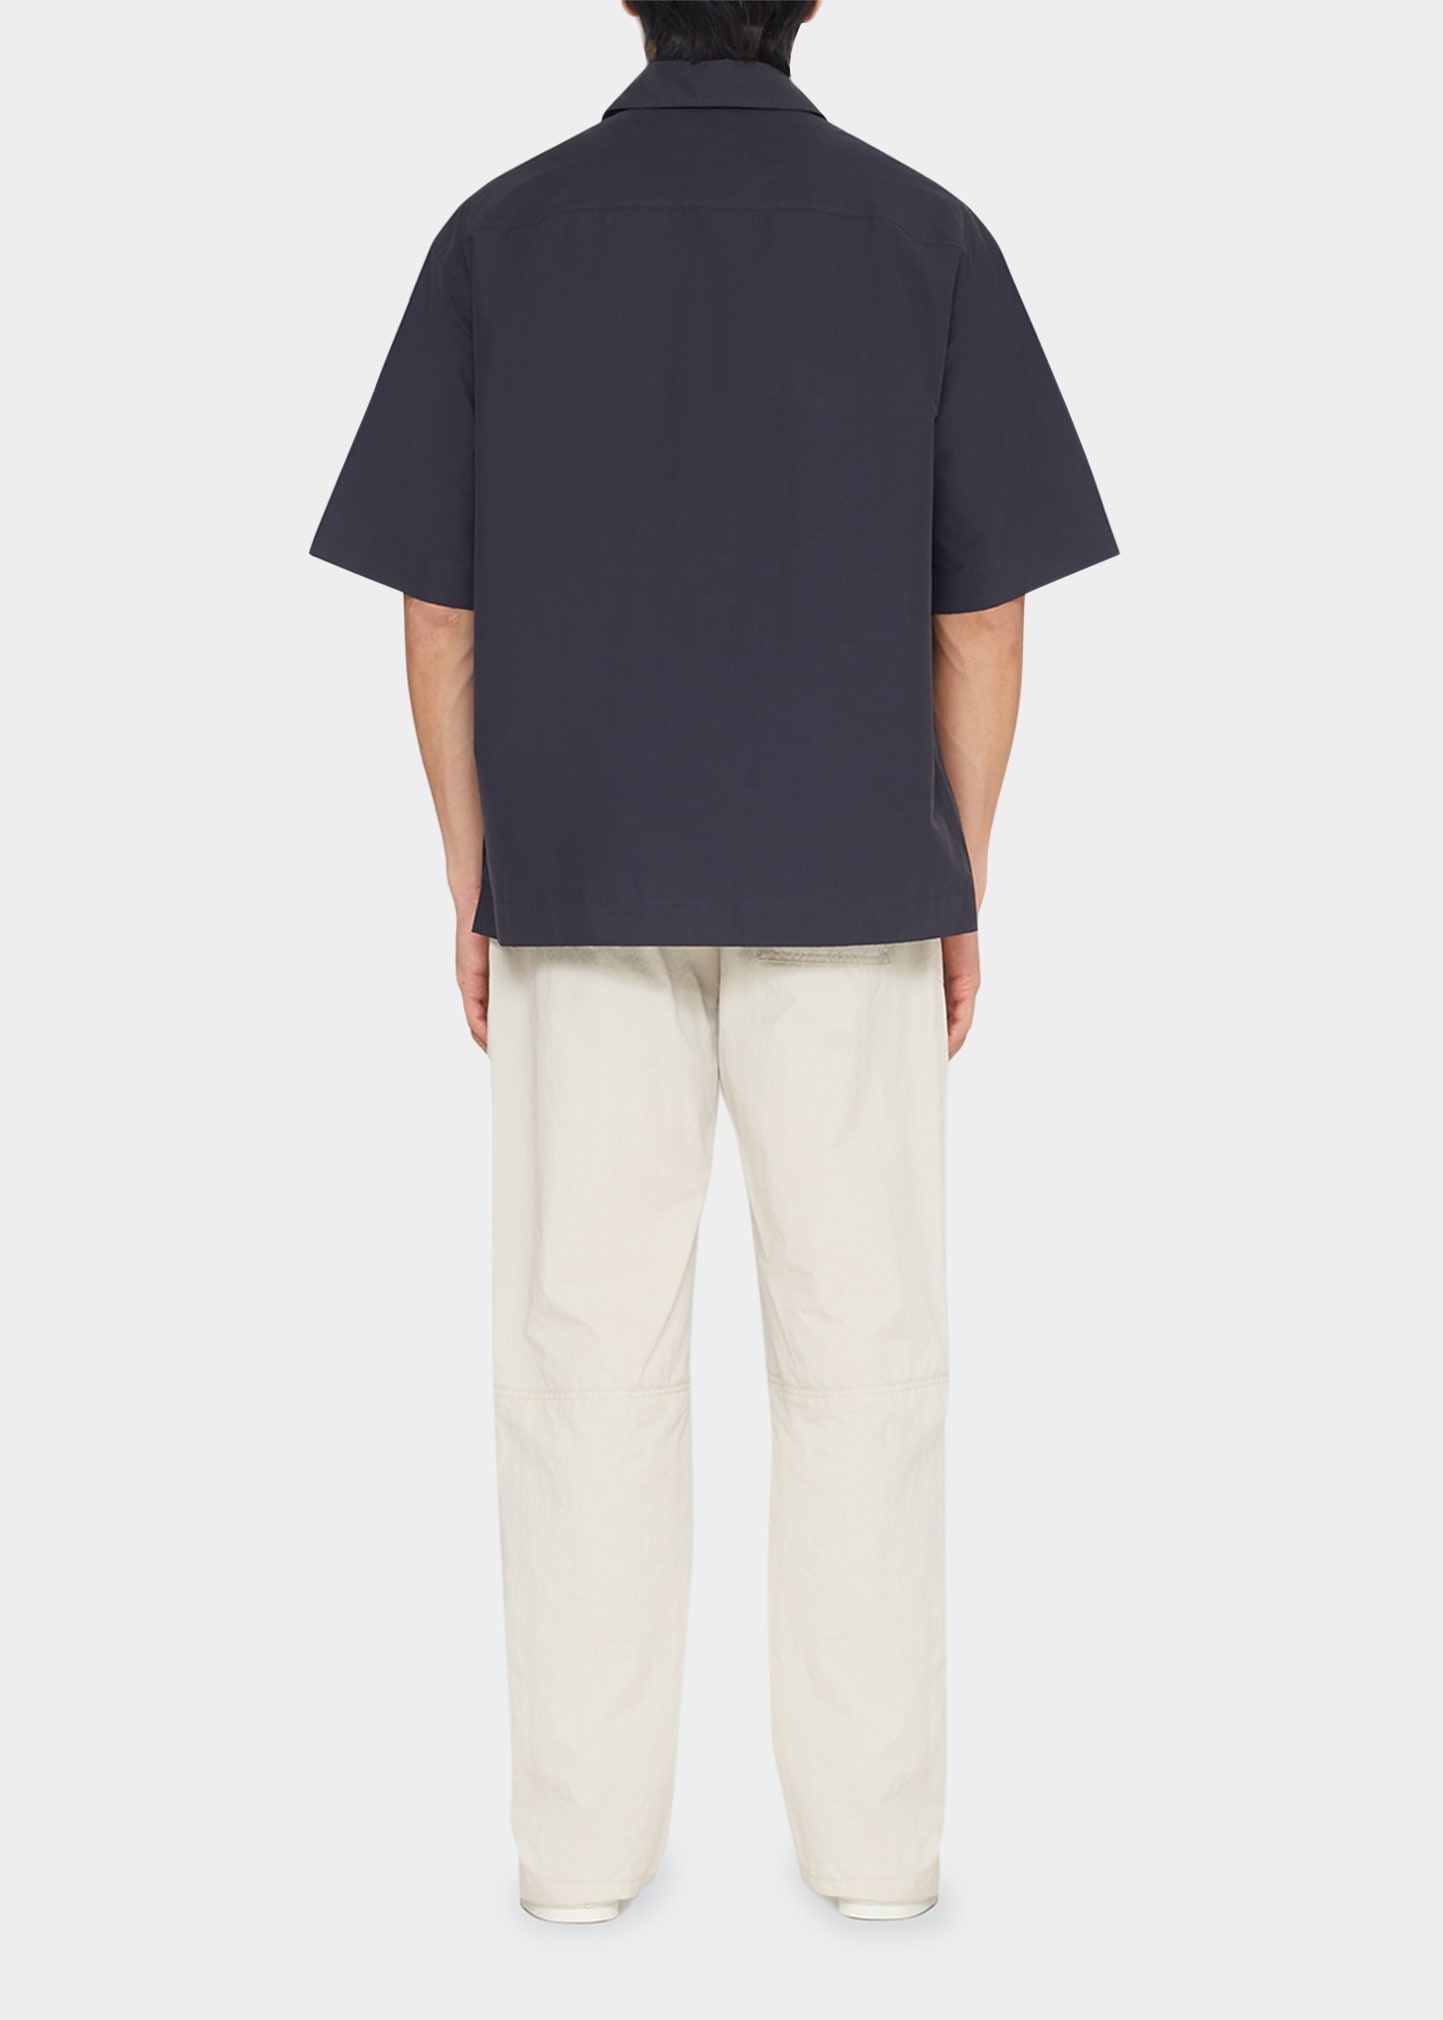 Men's Half-Zip Popover Shirt - 2